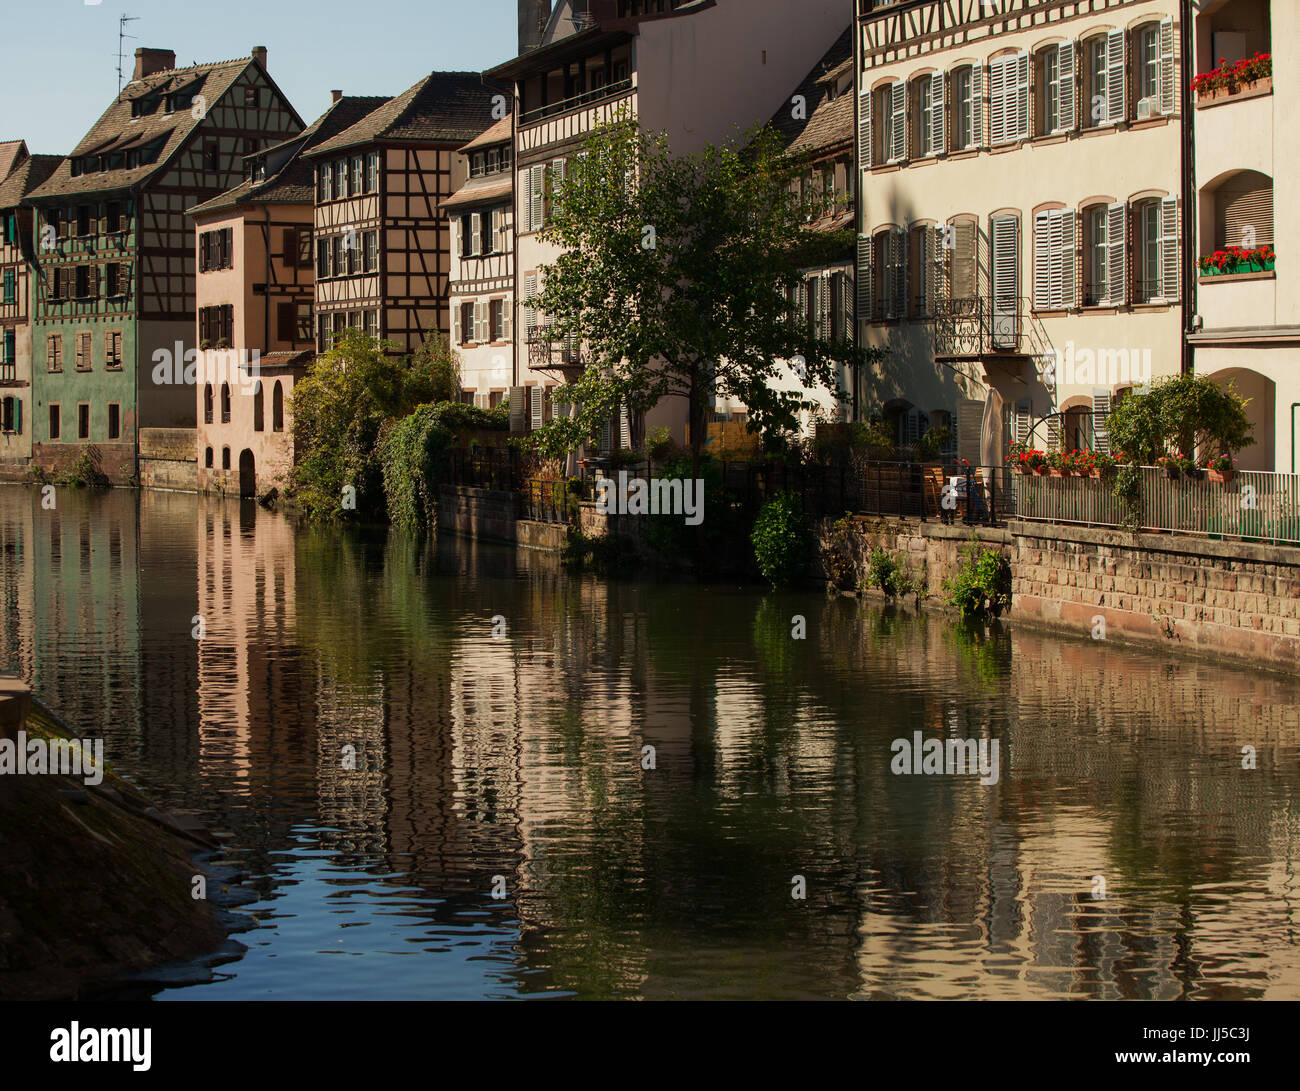 Straßburg, Frankreich - Altstadt; alte Häuser und Gebäude in der Nähe von Stadt Kanalsystem am sonnigen Tag; Stockfoto